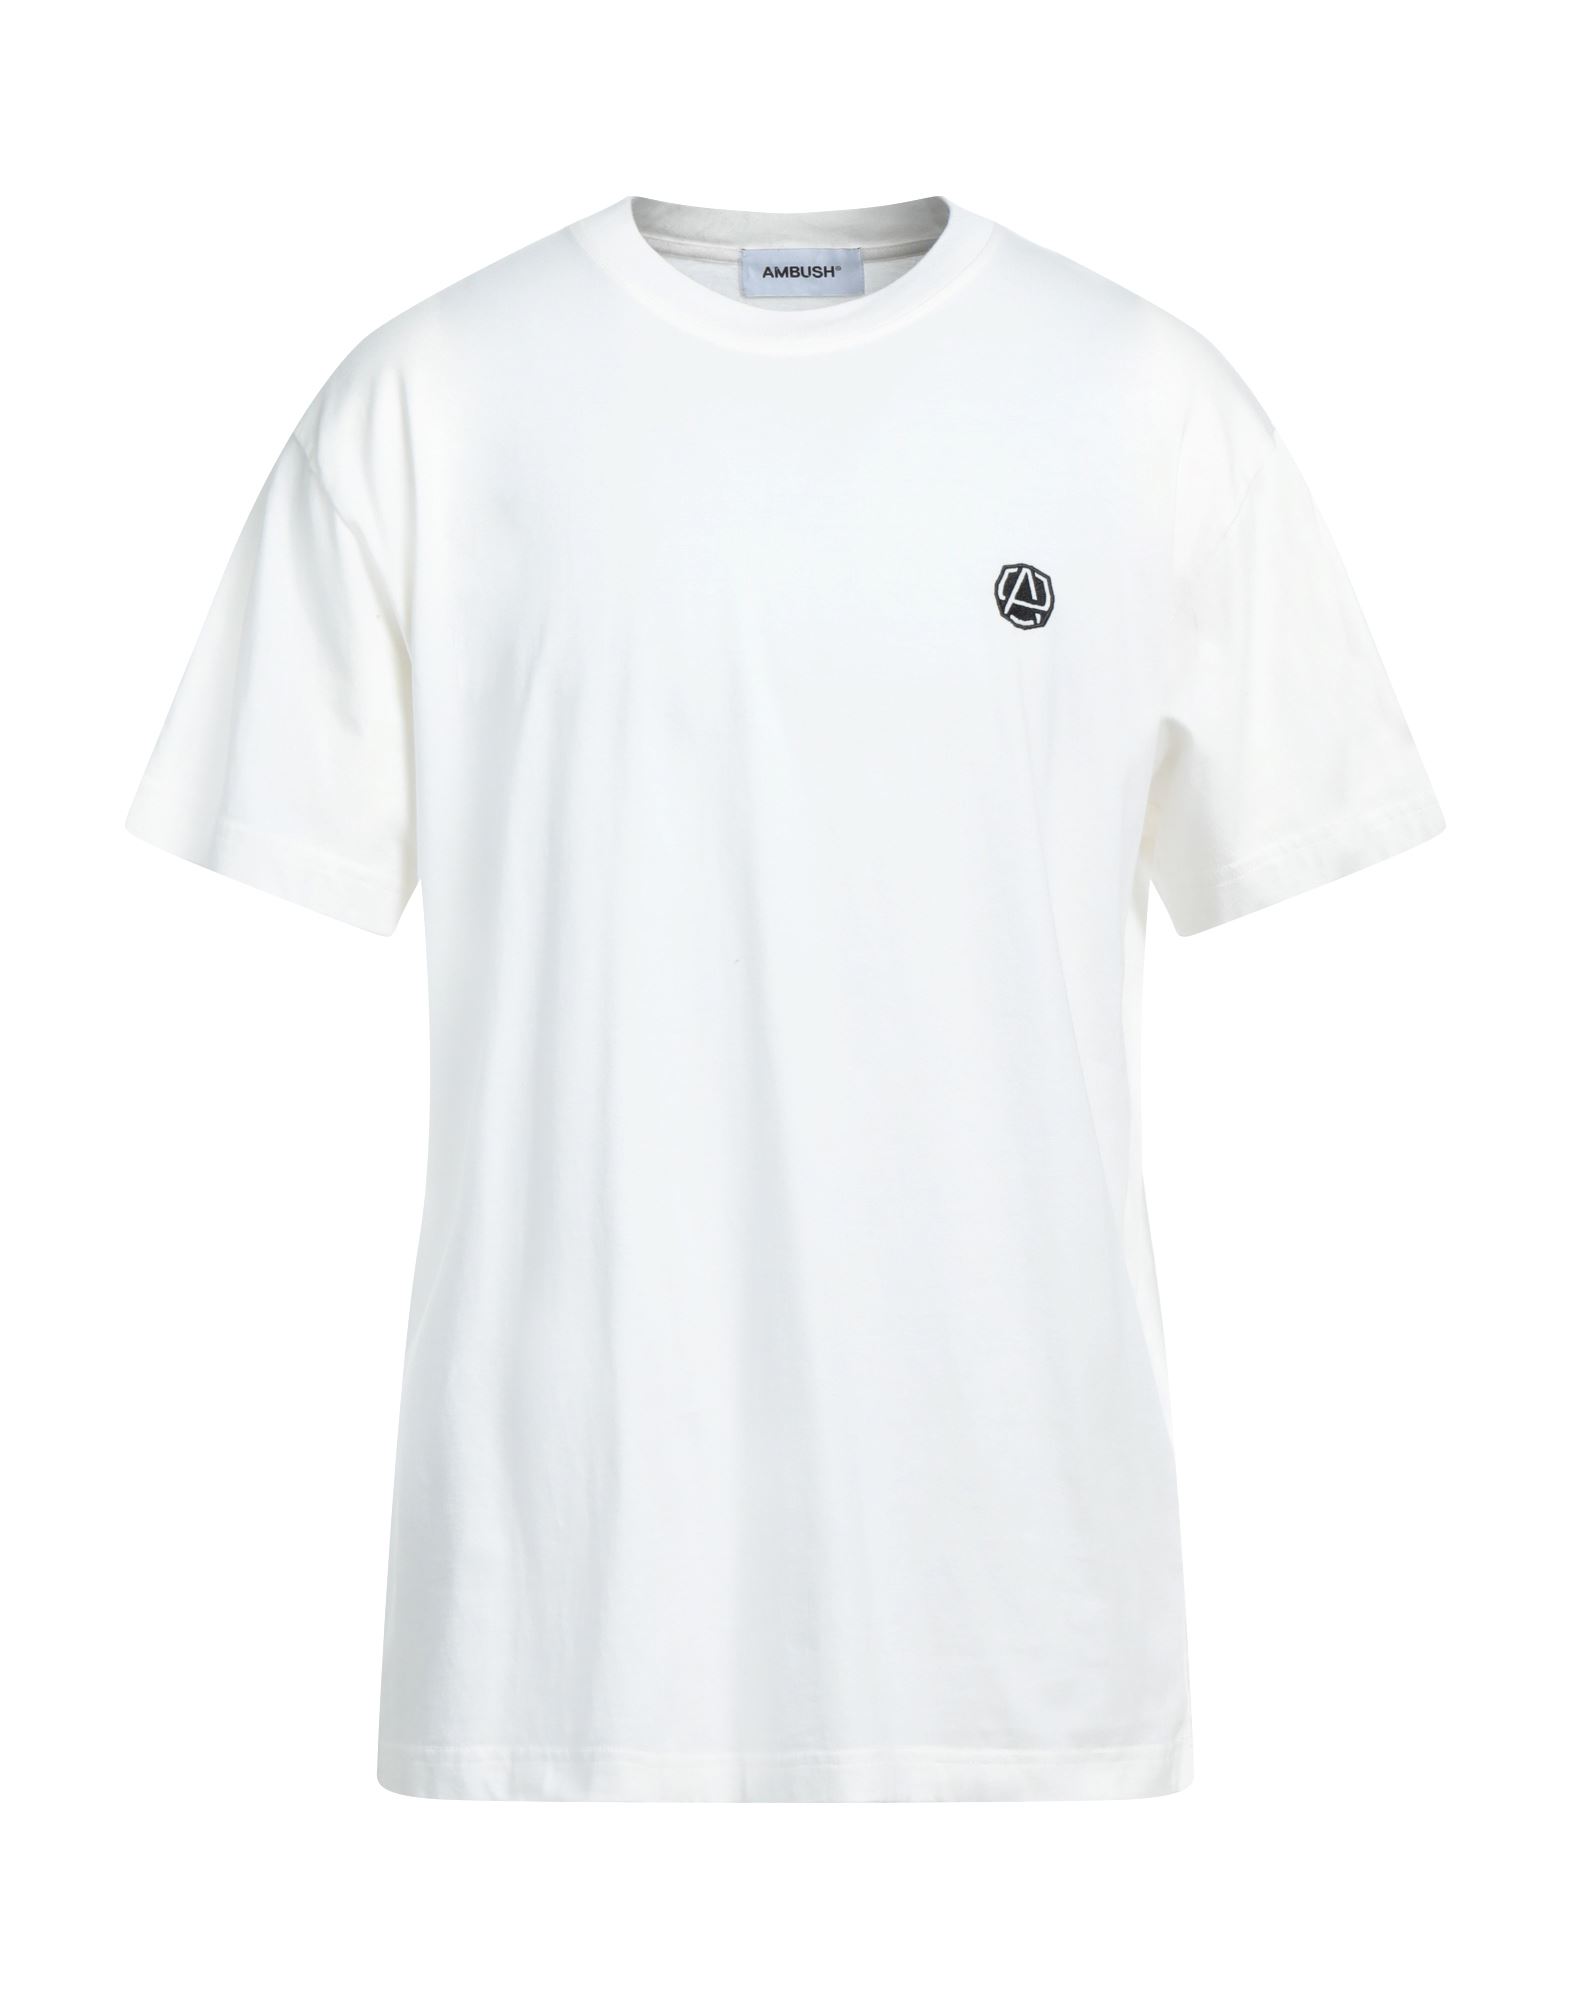 AMBUSH T-shirts Herren Weiß von AMBUSH